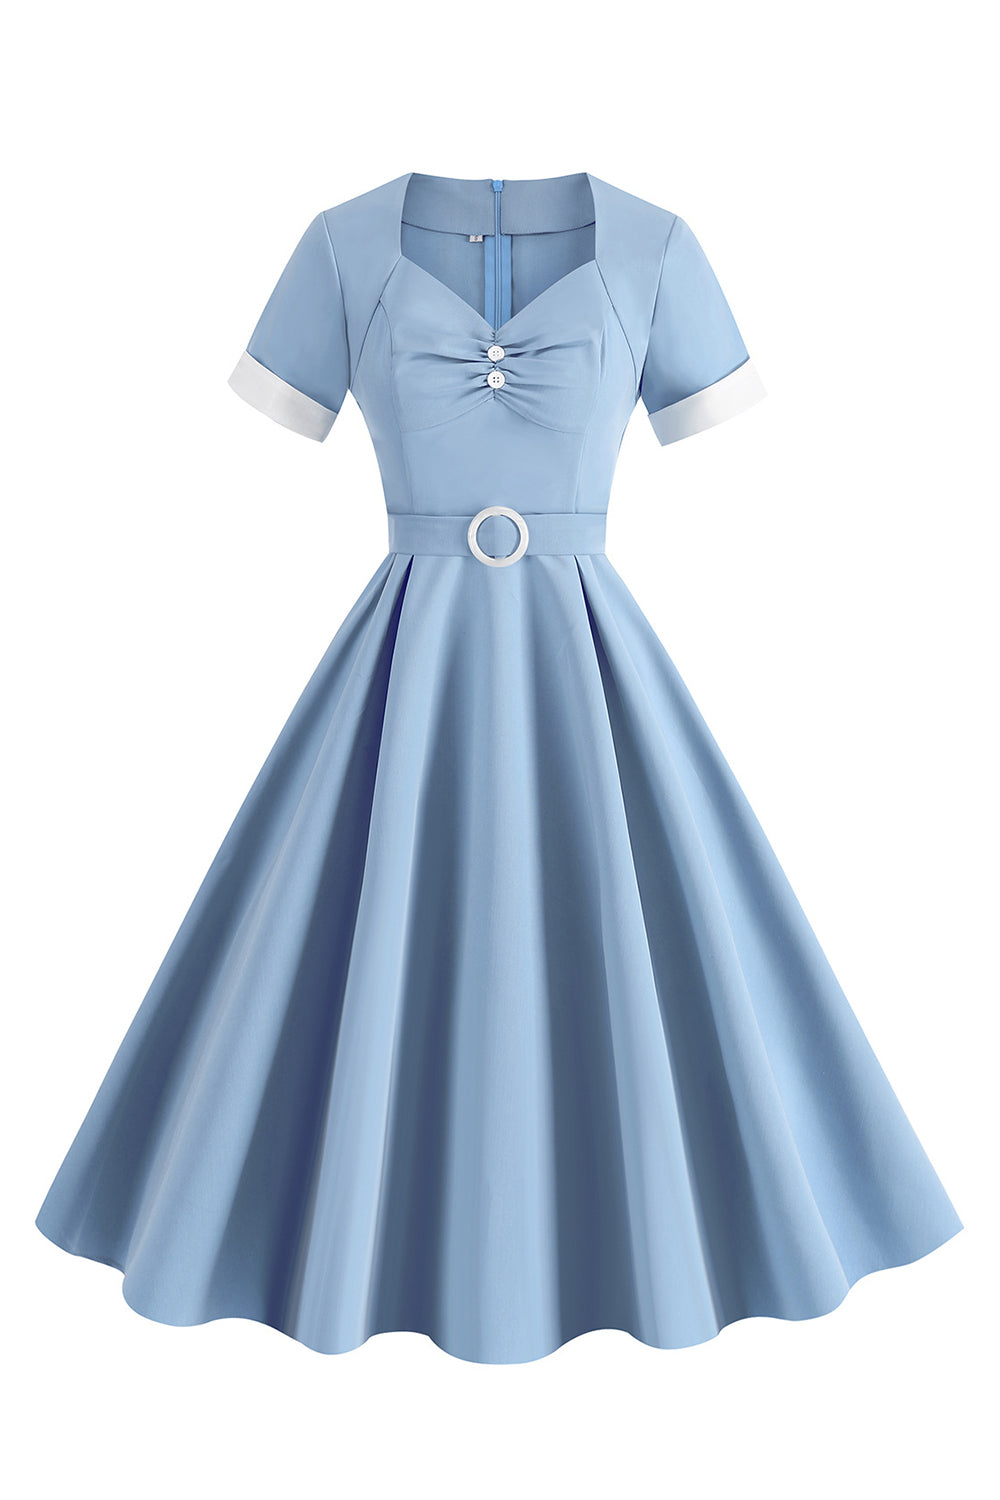 Blaues A-Linie Vintage Kleid aus den 1950er Jahren mit Gürtel